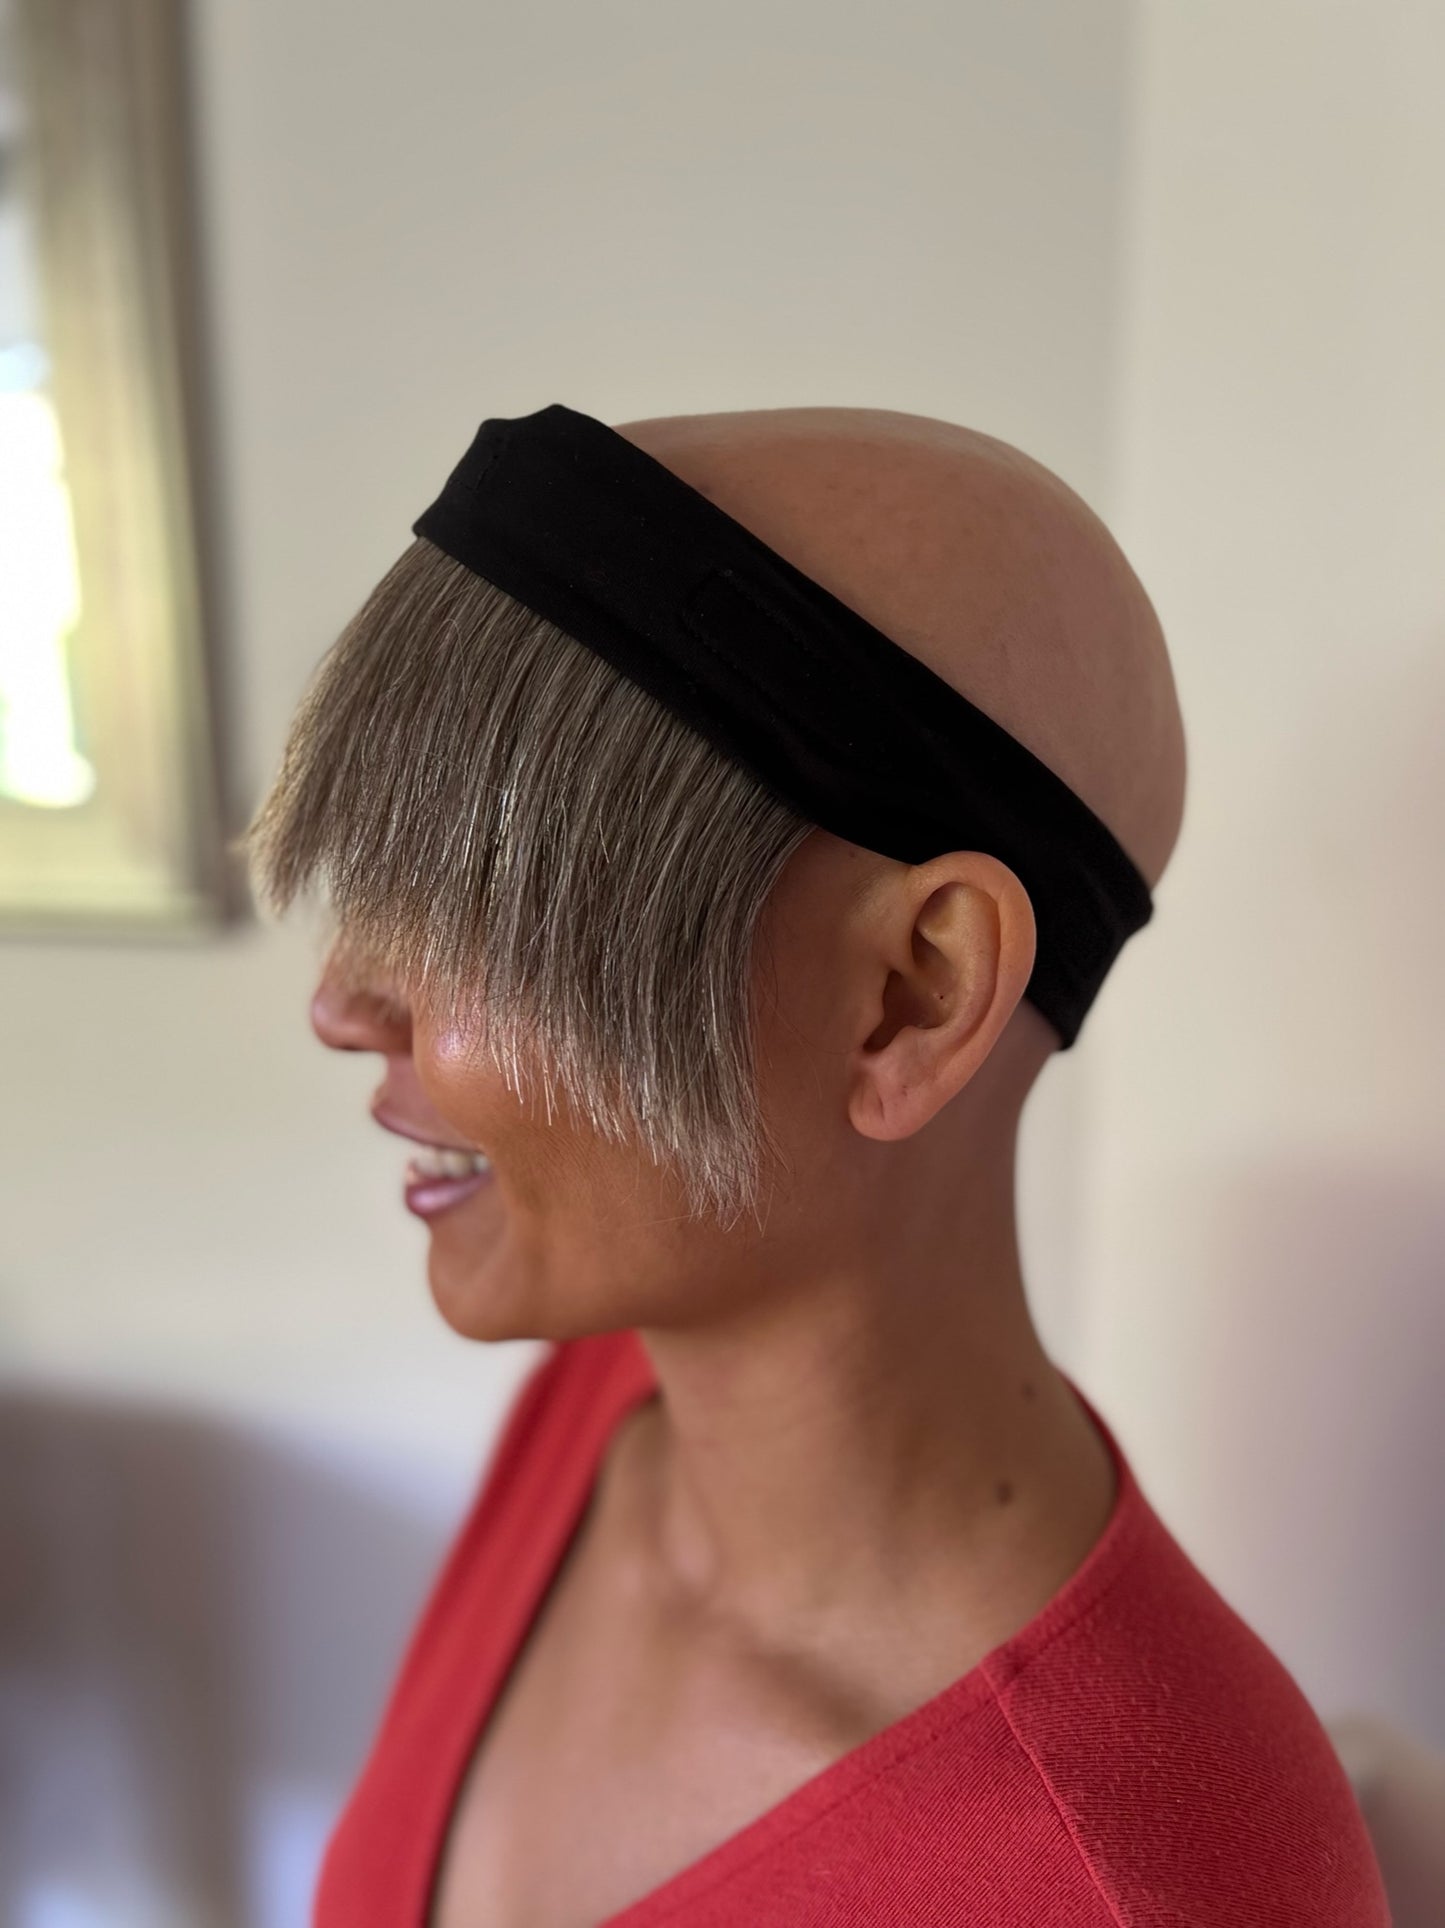 Human Hair Fringe Wig for Under Hats - Short, Ash Highlights